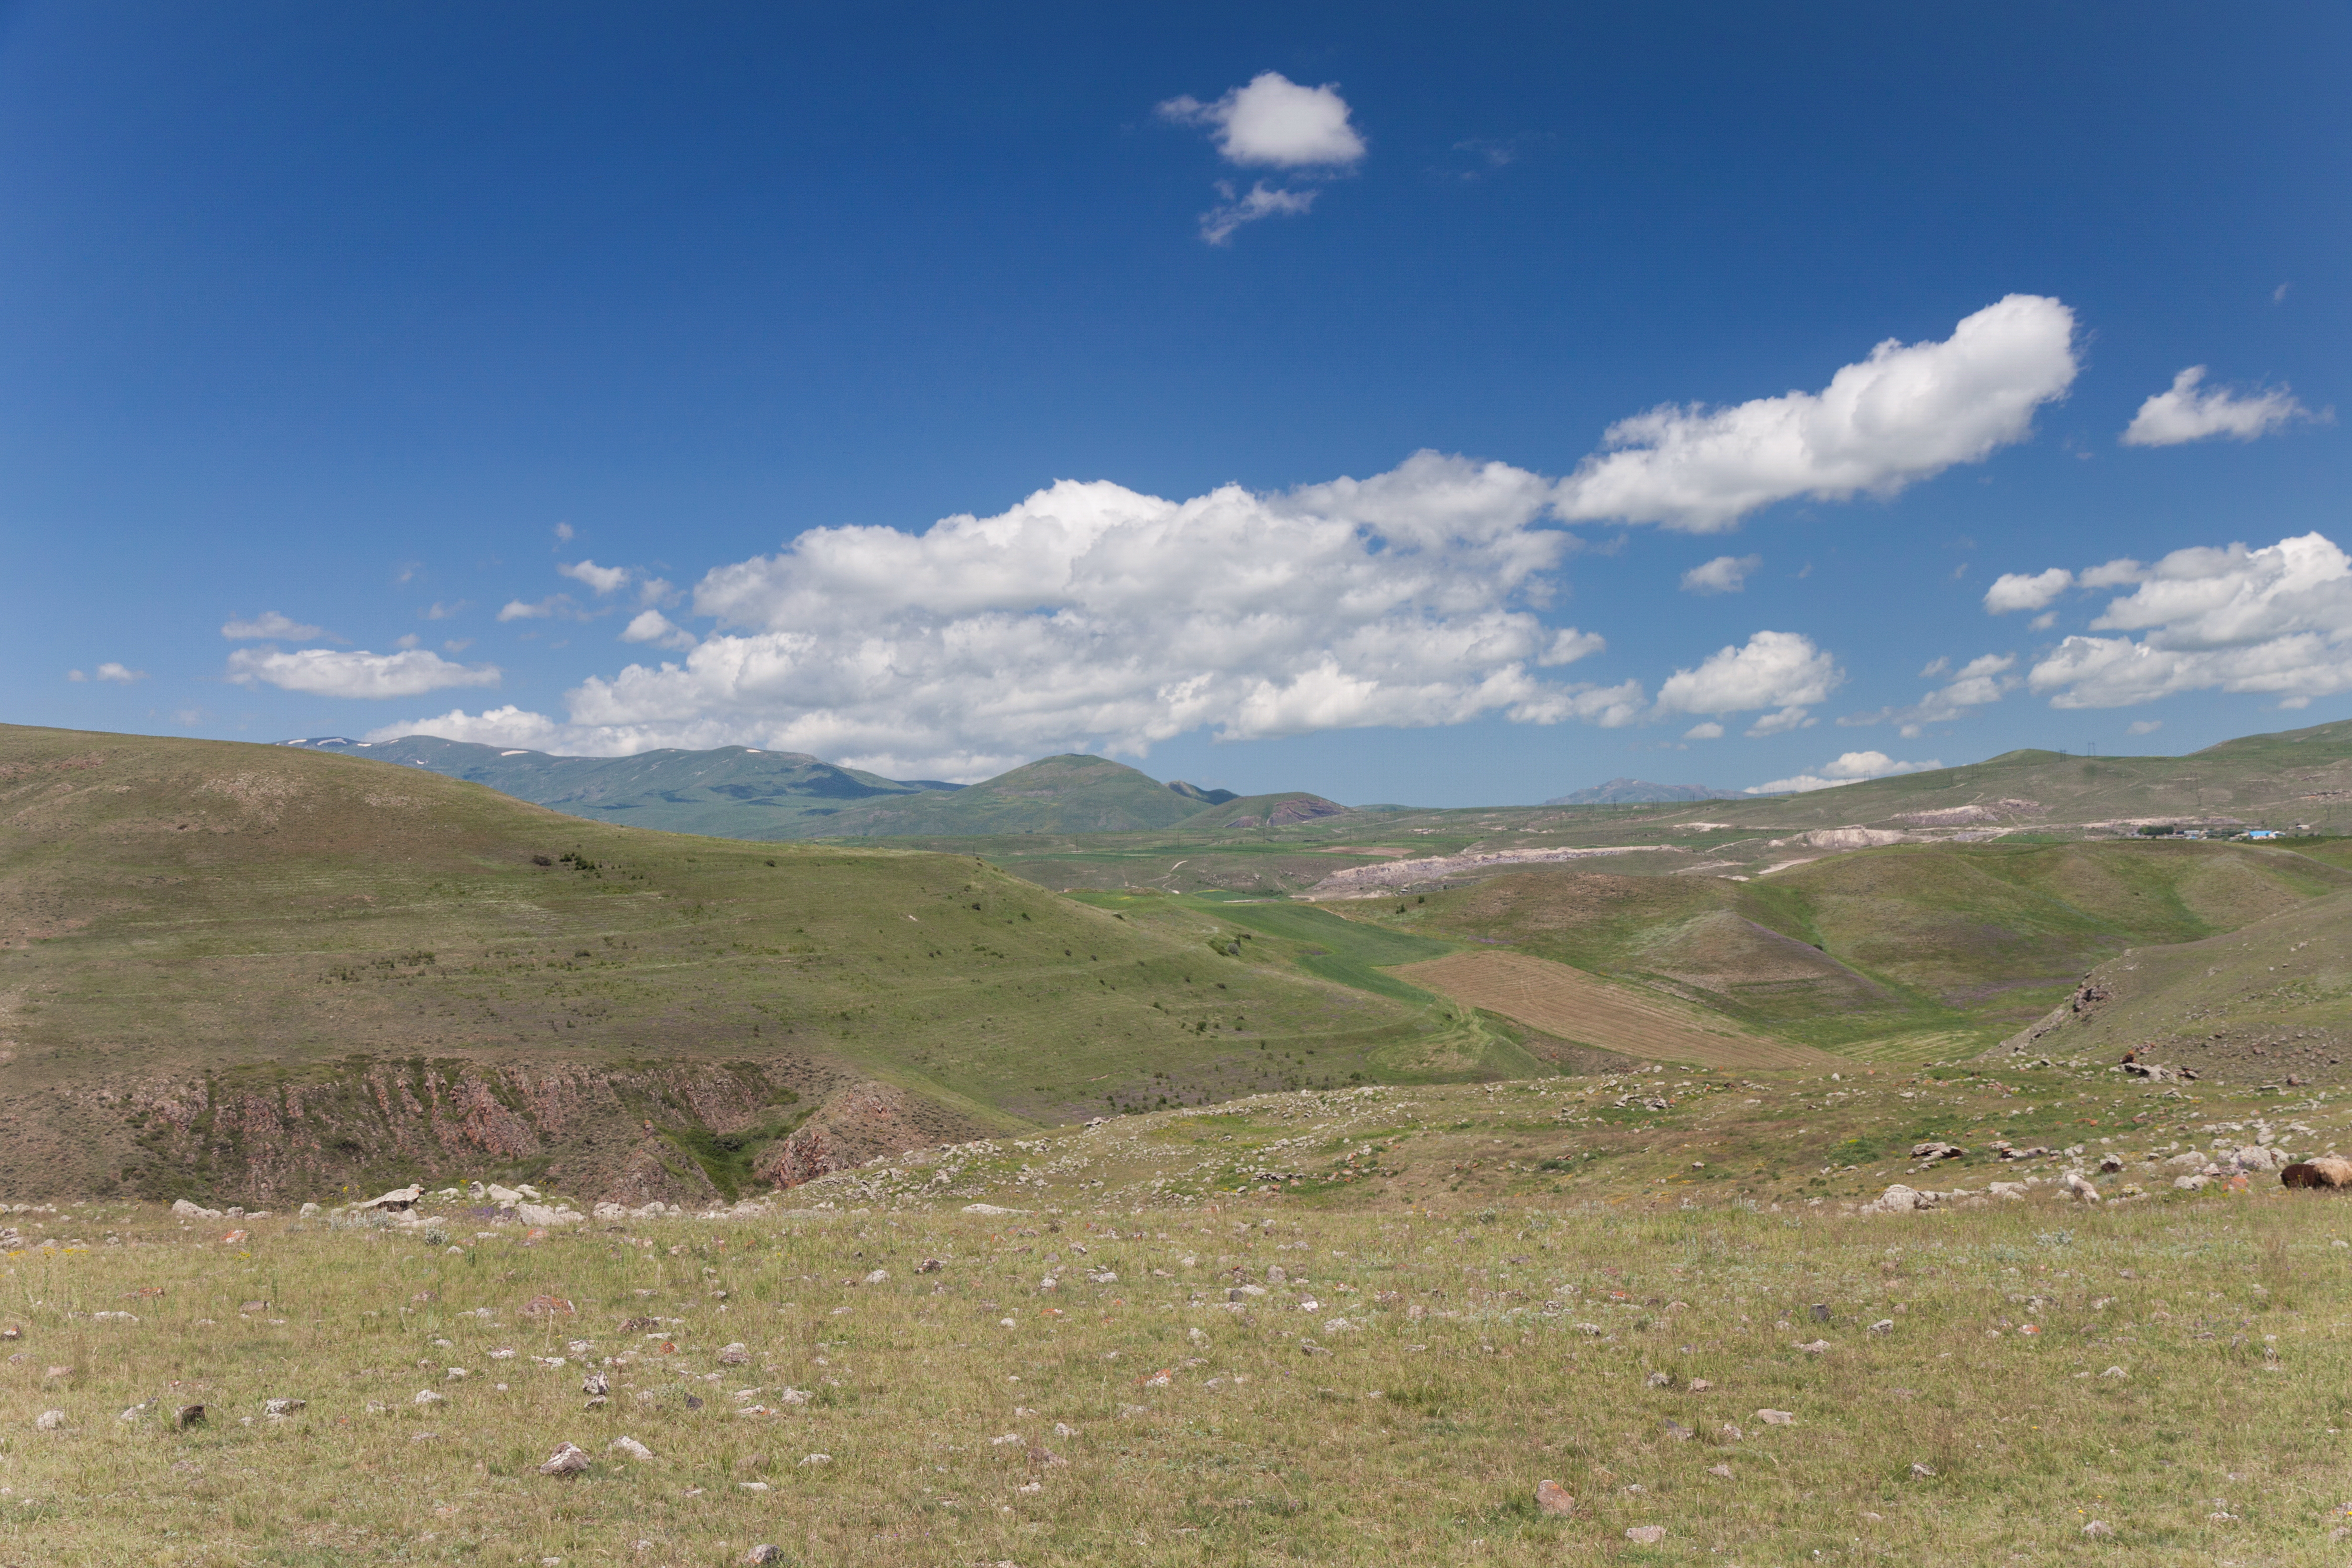 2014 Prowincja Sjunik, Zorac Karer, Widok na okoliczne wzgórza i góry (10)